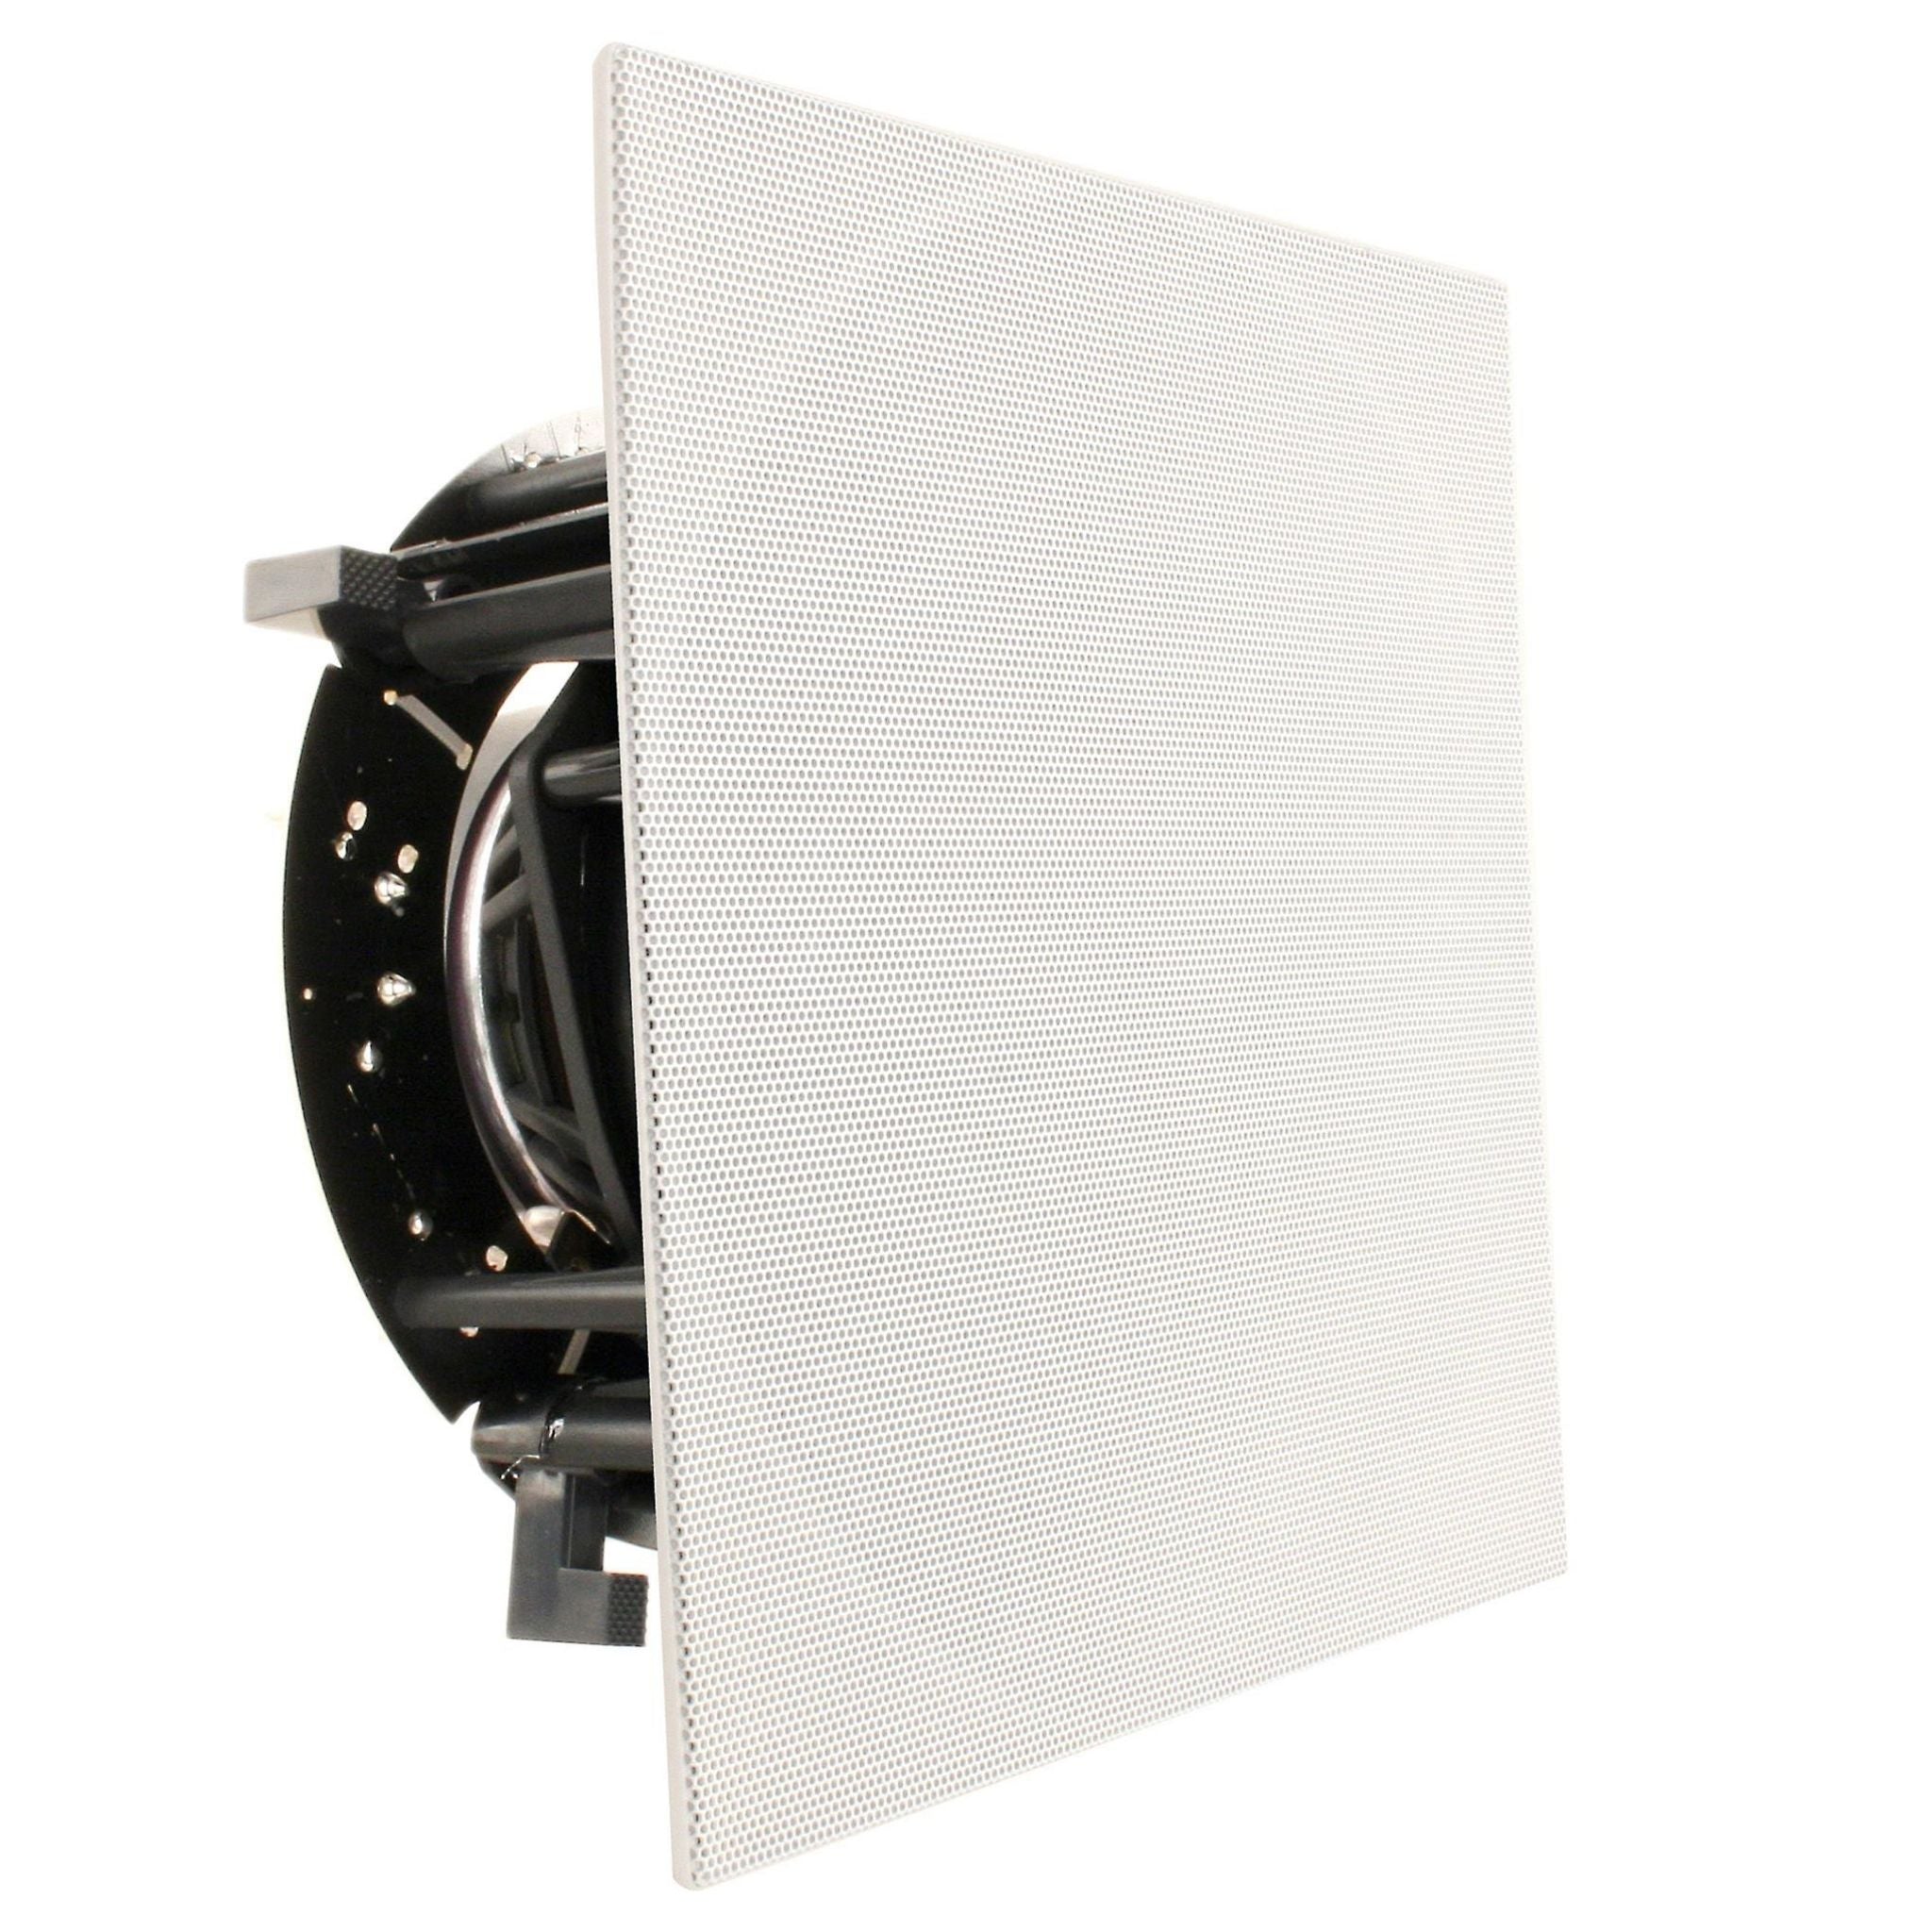 Revel C763 - In-Ceiling Speaker - Piece - AVStore